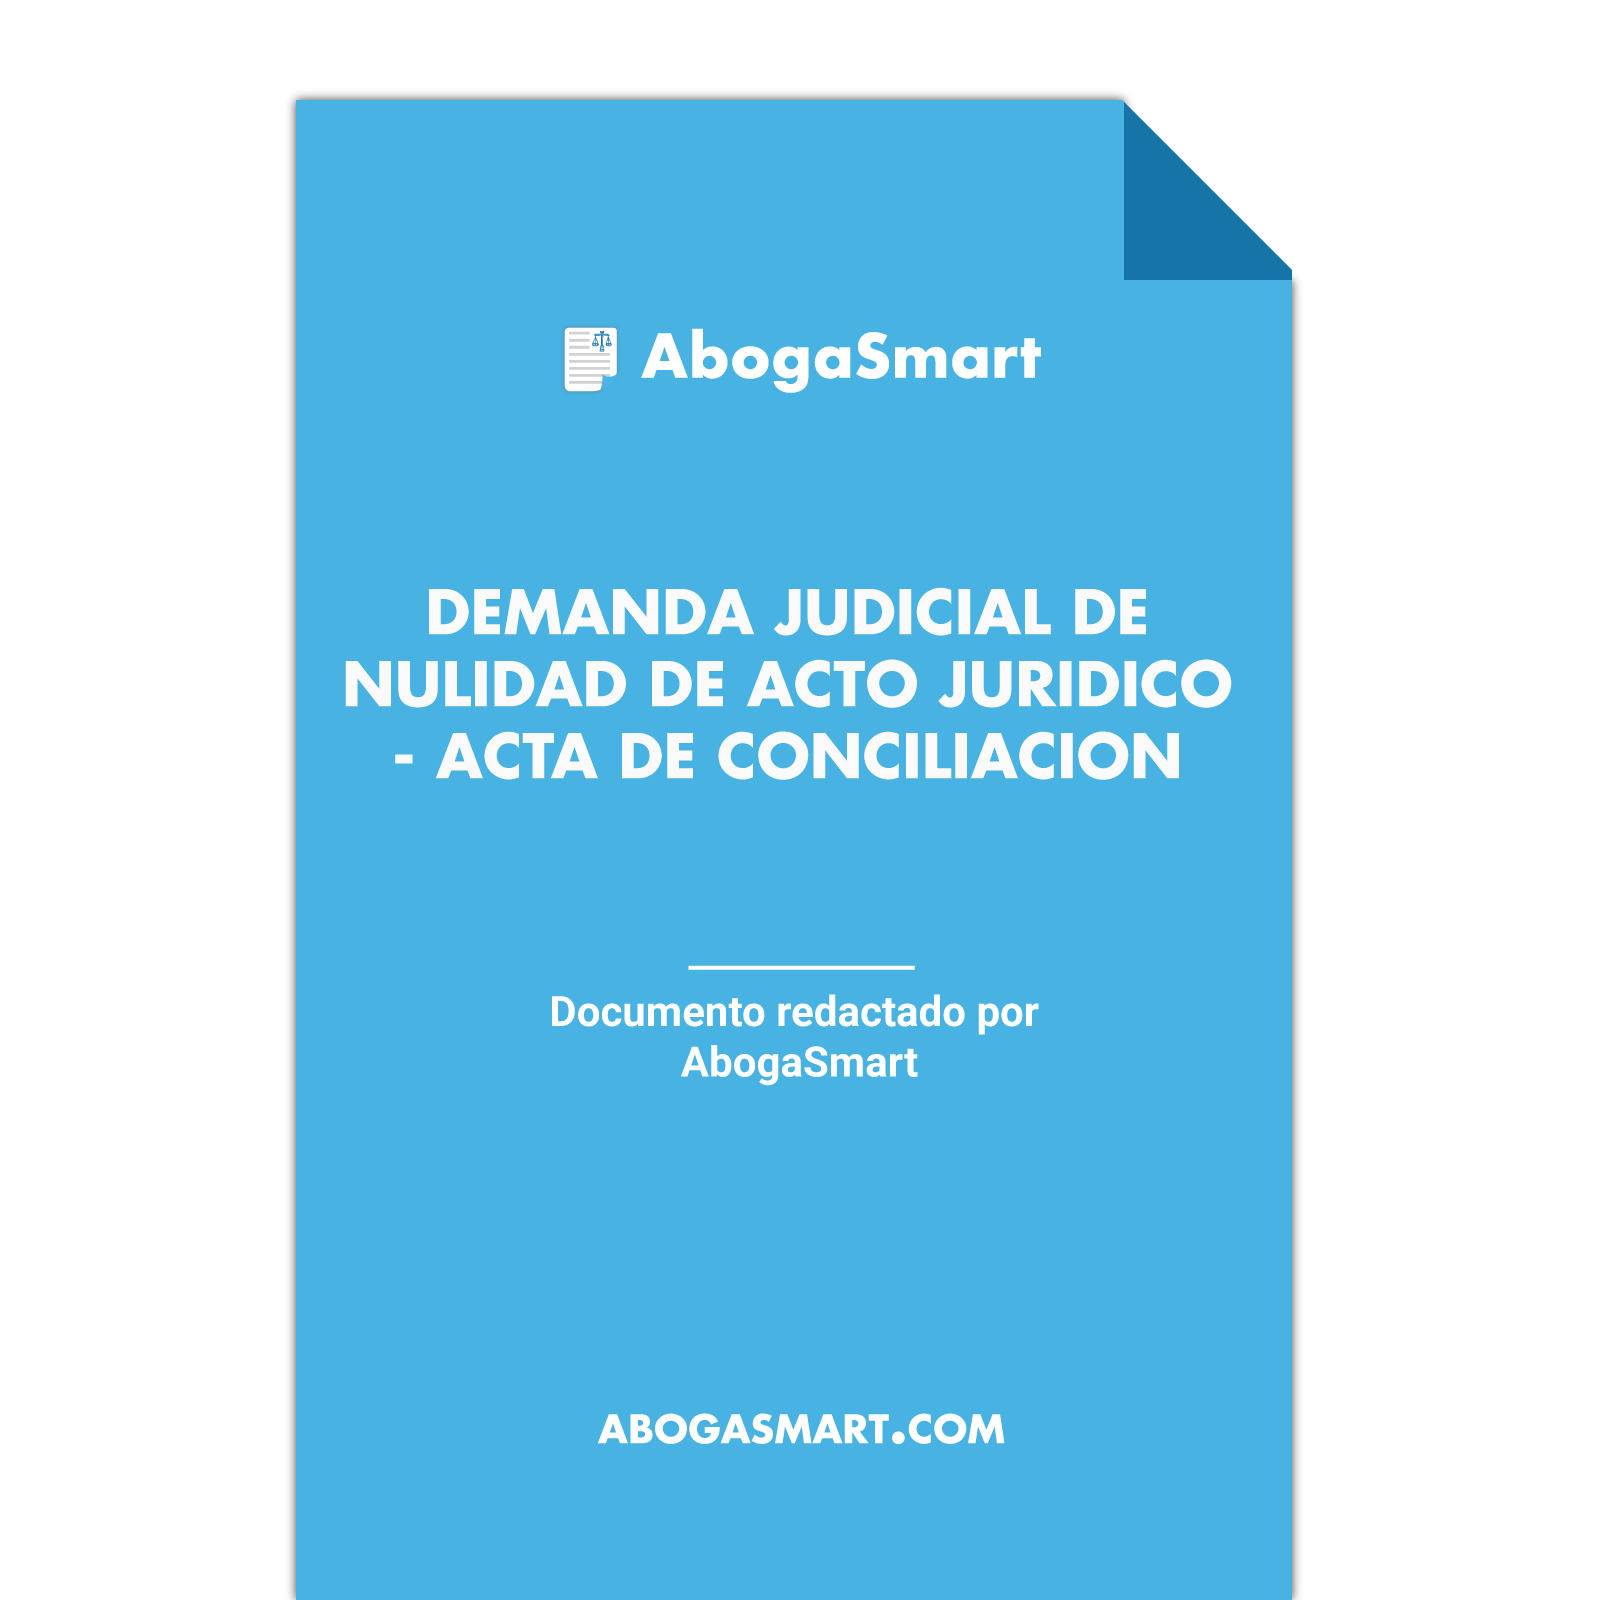 Demanda judicial de nulidad de acto jurídico - Acta de conciliación -  AbogaSmart